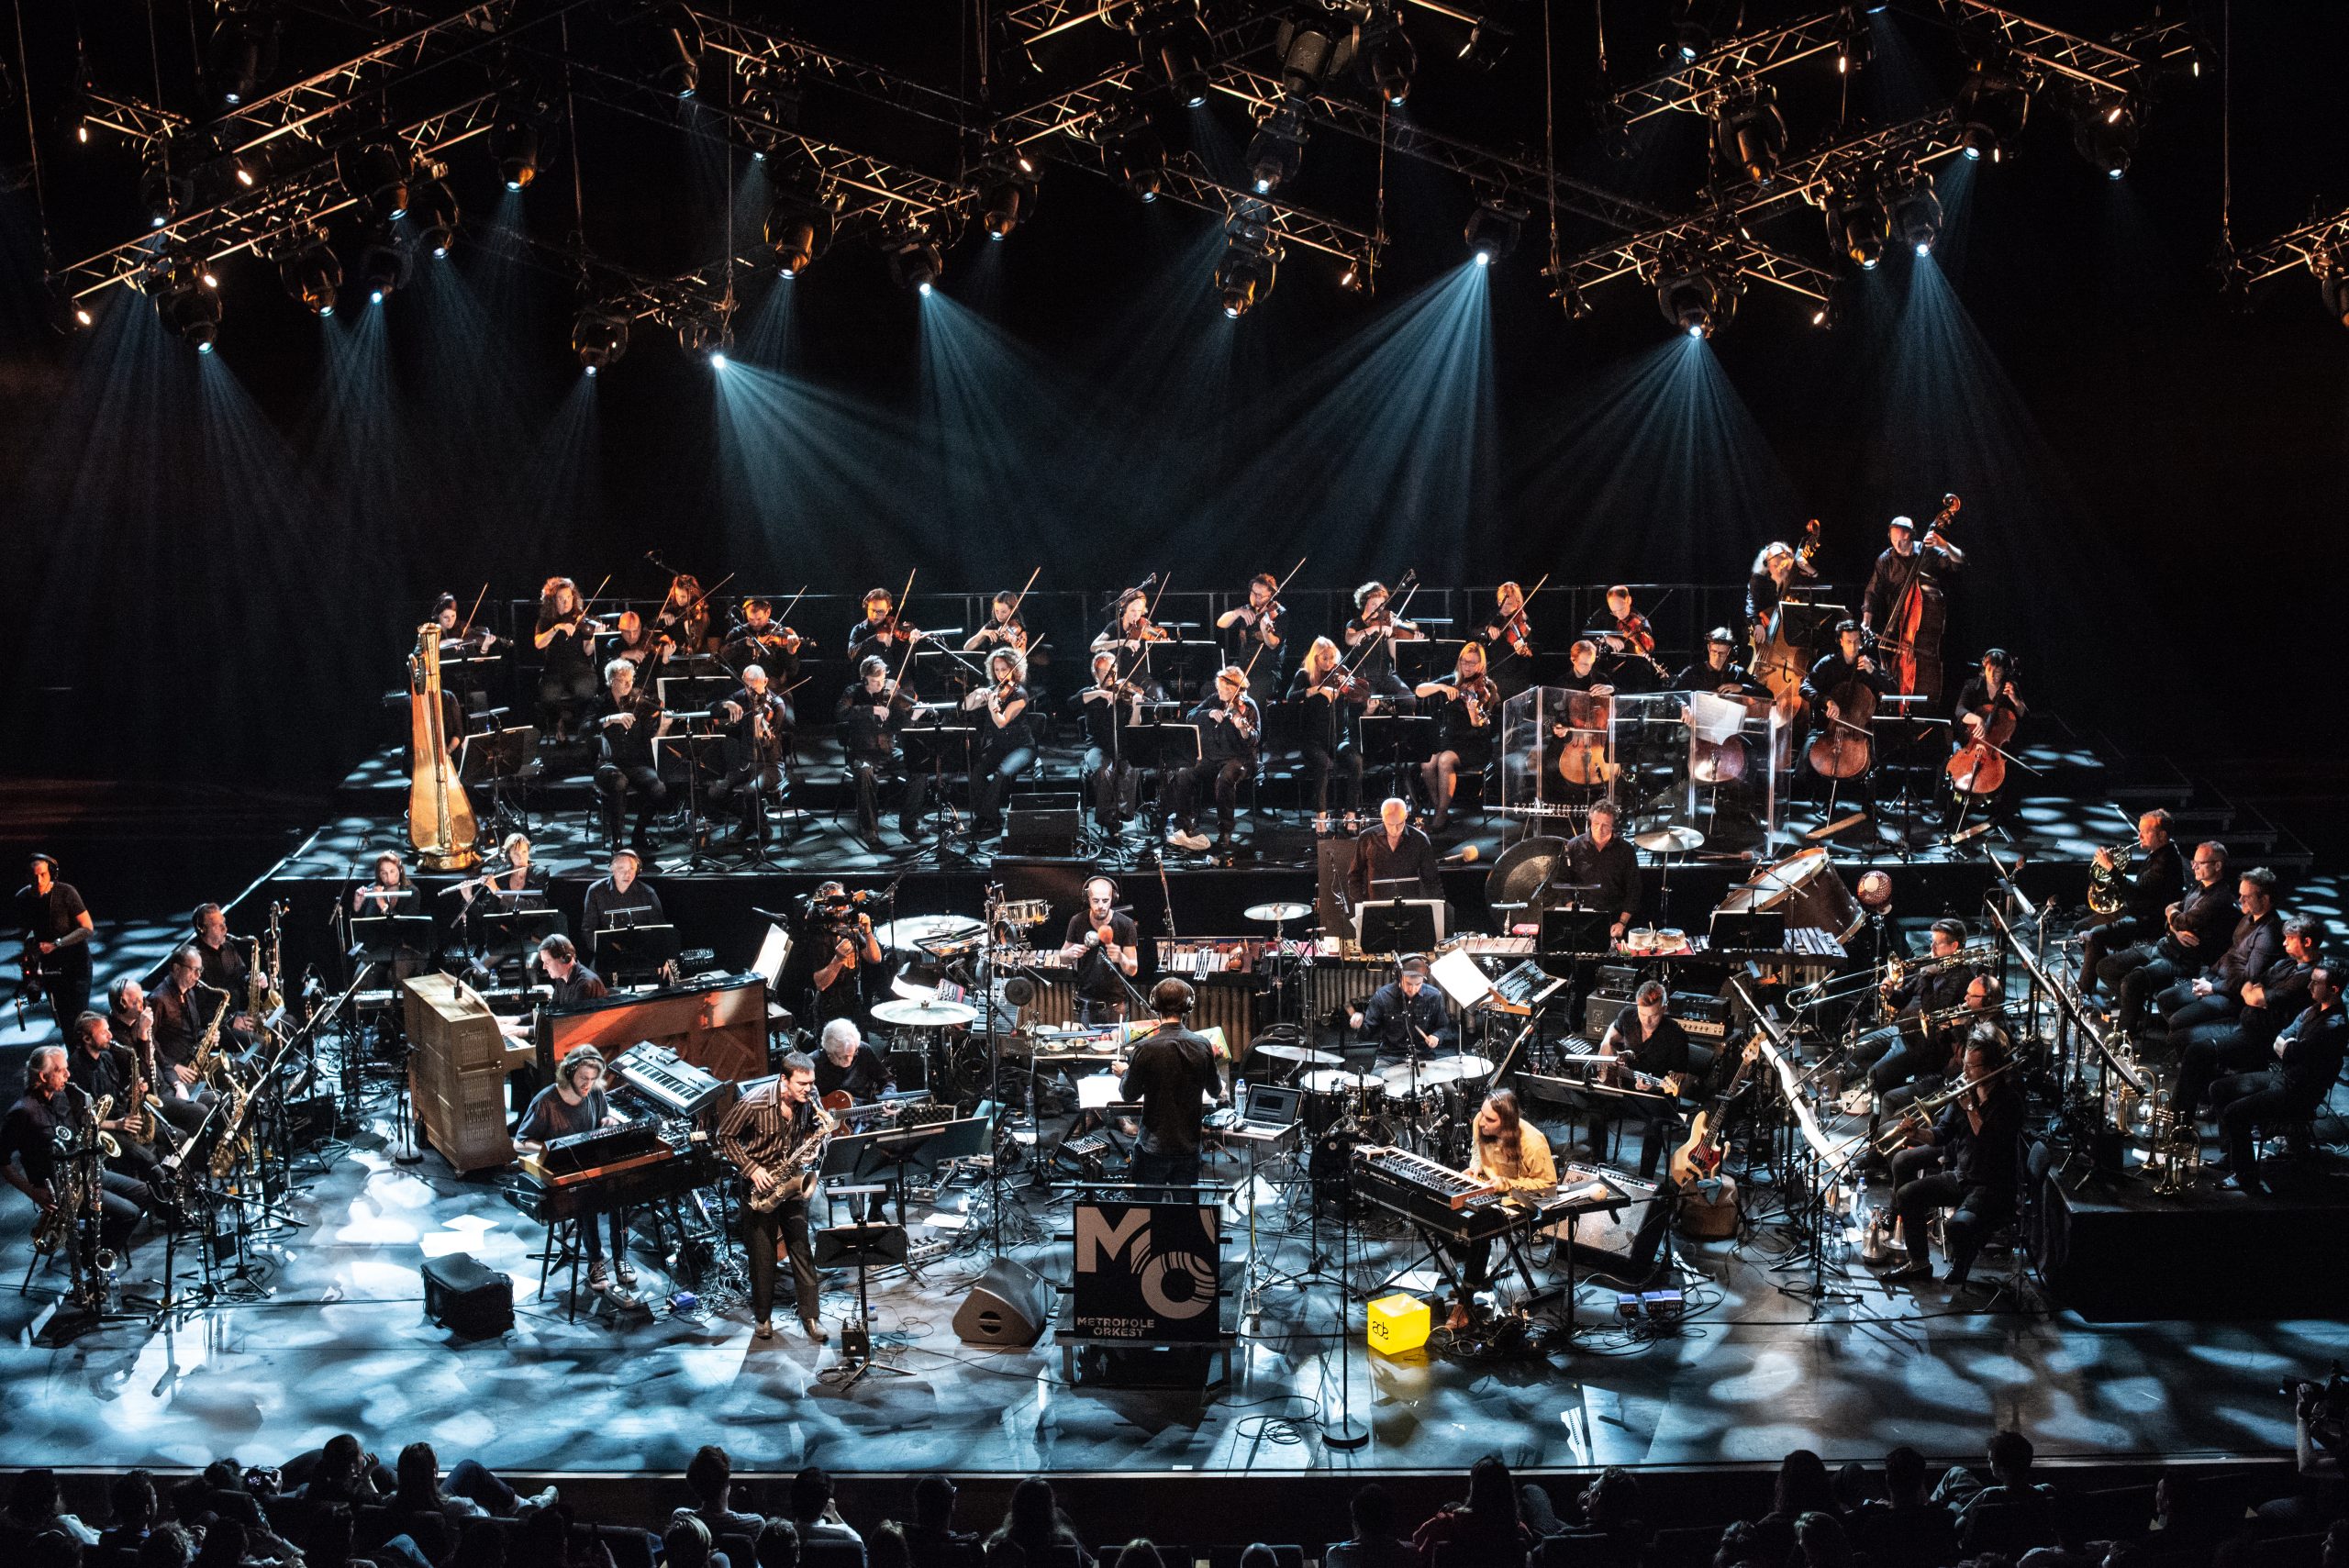 La 32ª edición contará con la Metropole Orkest, la orquesta de pop y jazz más importante del mundo